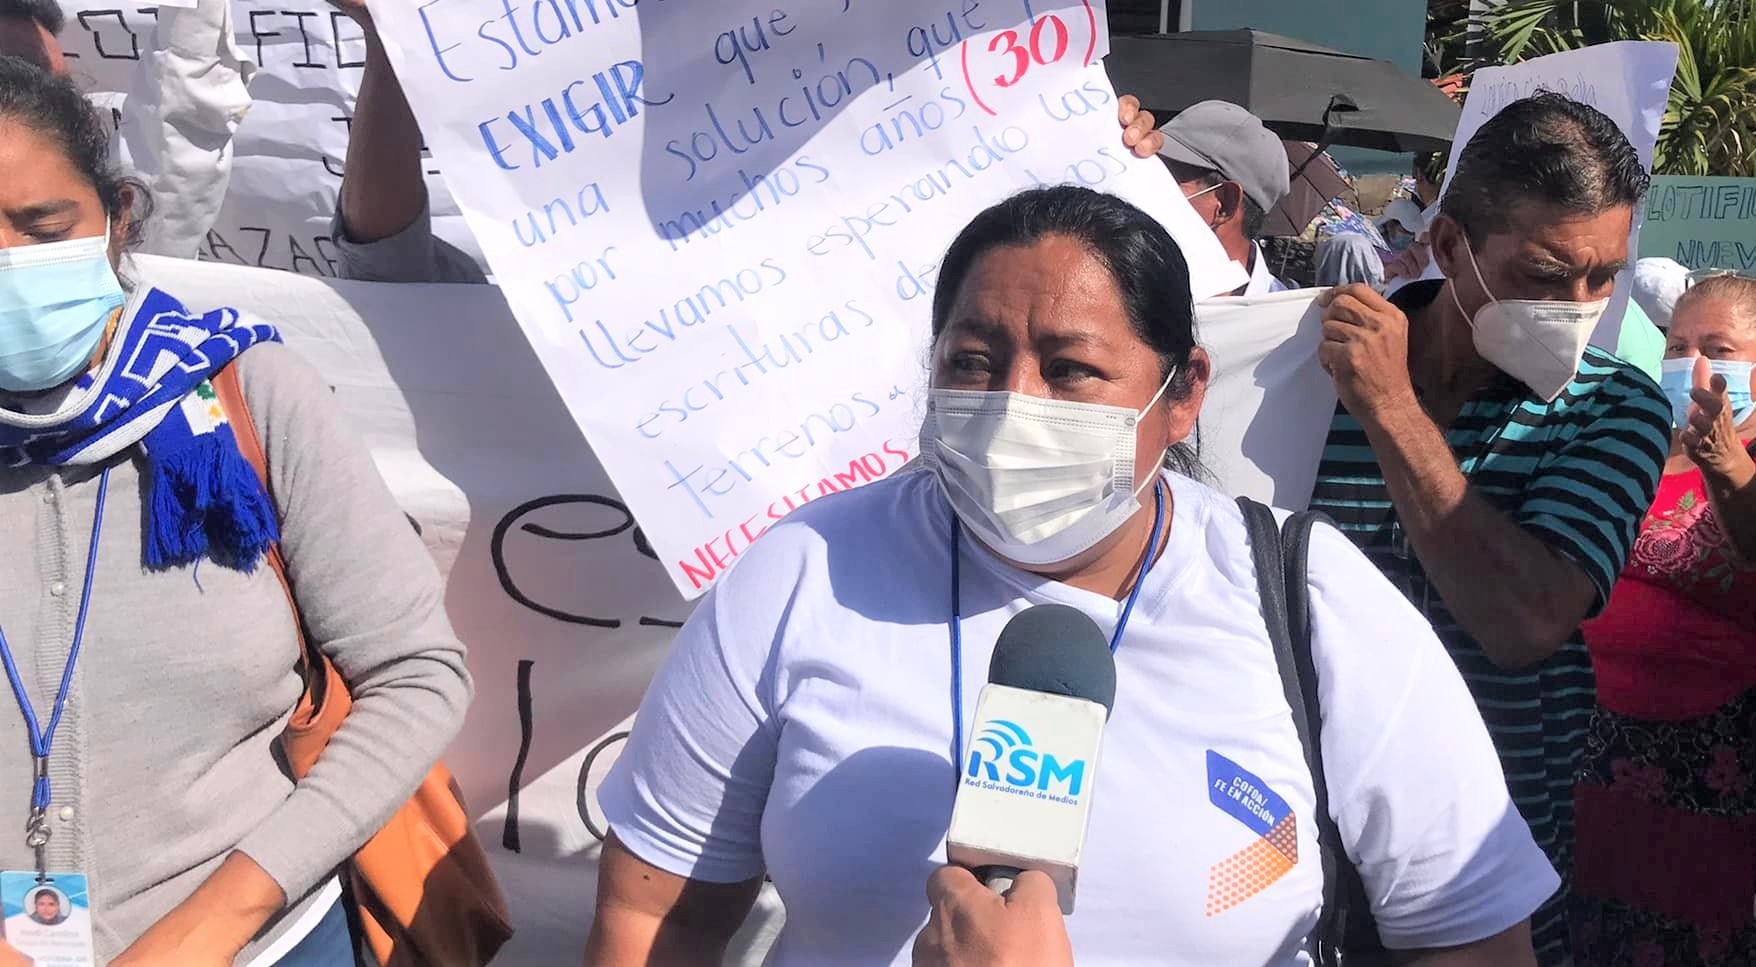 El Salvador: COFOA Action Brings Major Breakthrough In Land Rights Campaign